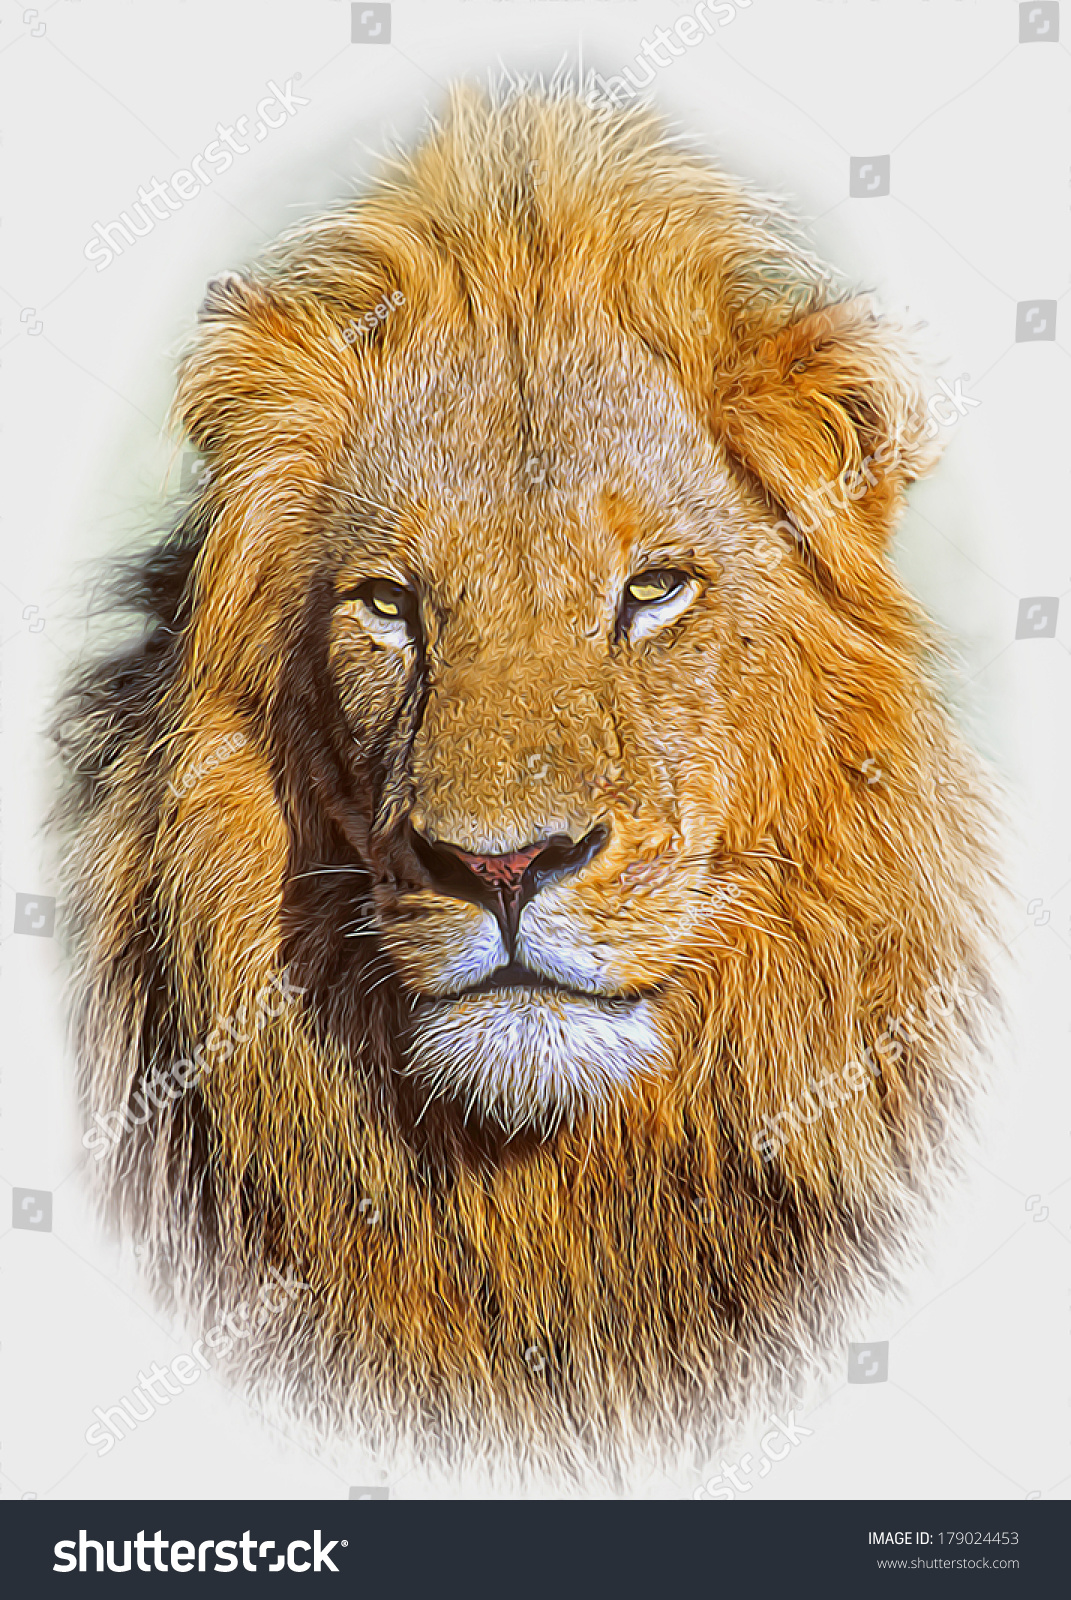 ライオンの水彩イラスト リアルなポートレート 白い背景にライオンの頭 テンプレート 接写 クリップアート 手描き 絵 のイラスト素材 Shutterstock